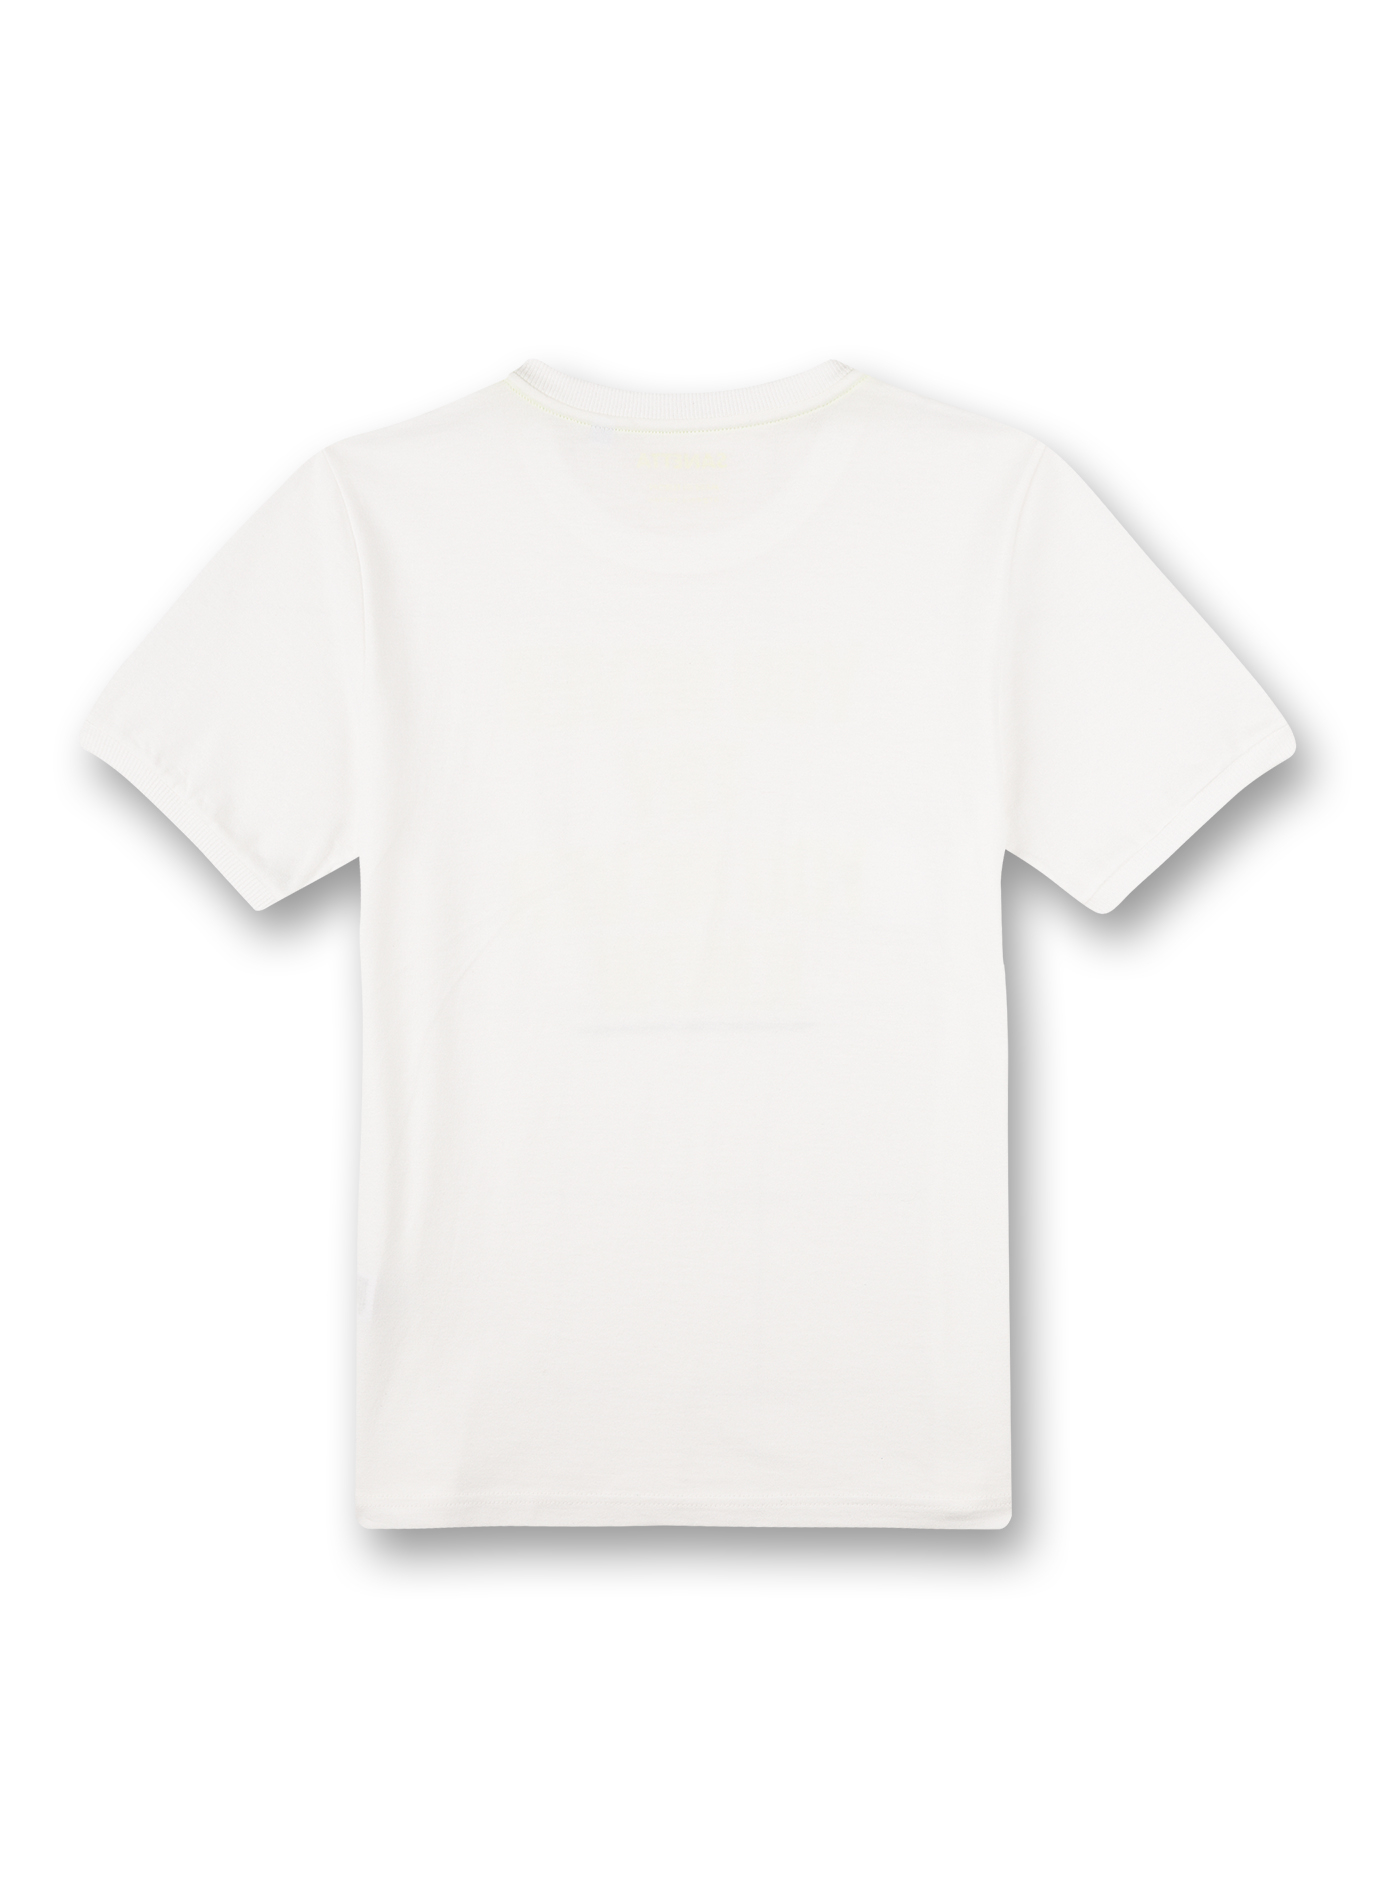 Jungen T-Shirt Weiß Athleisure Skate